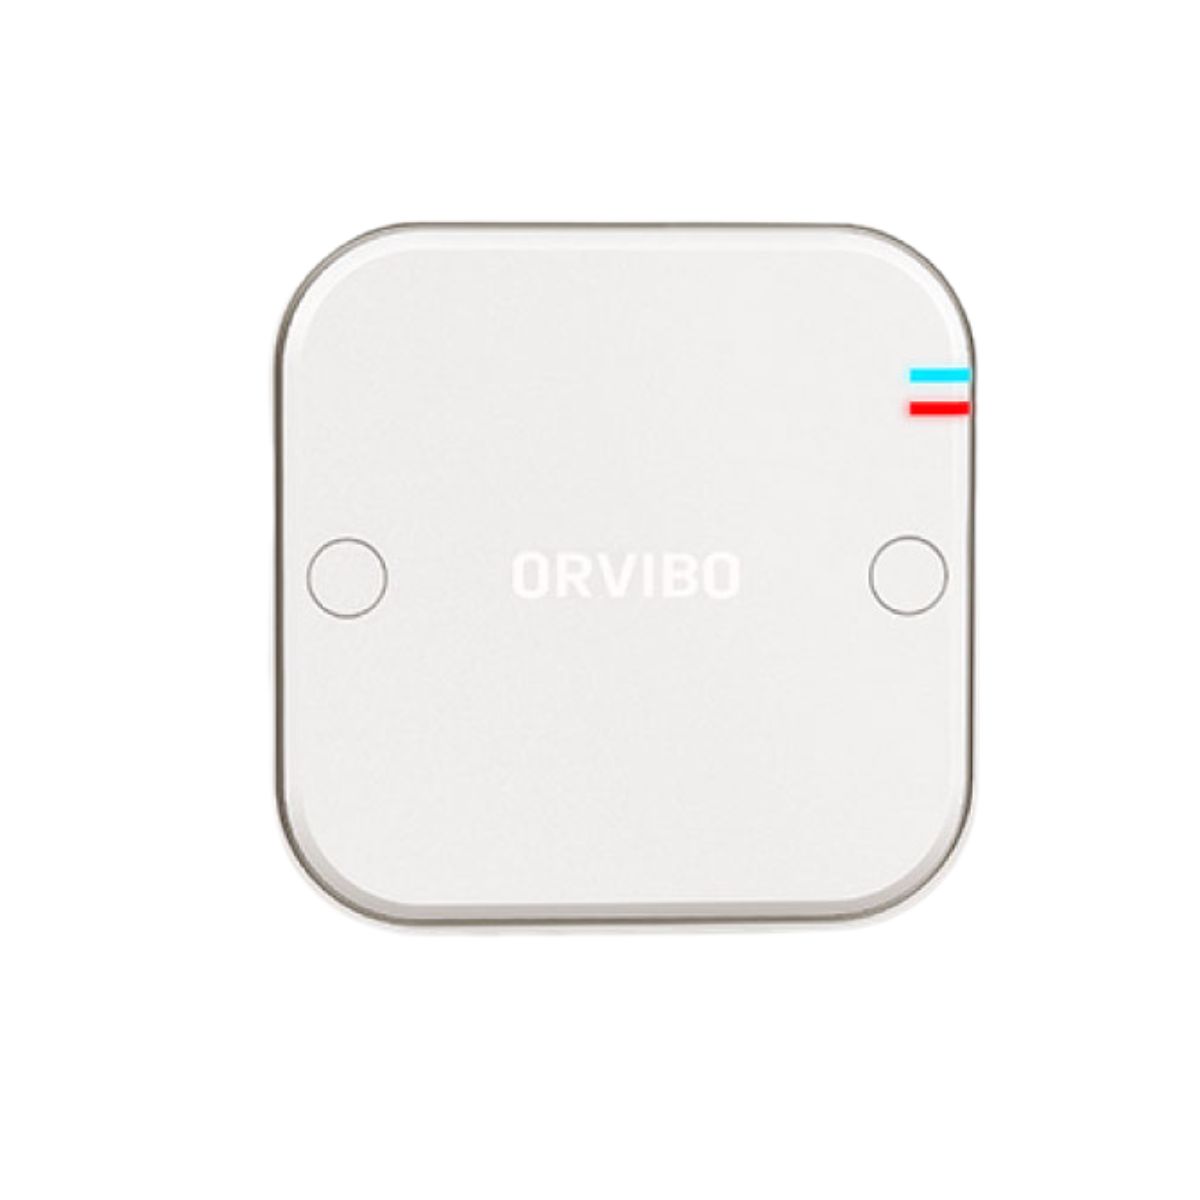 Thiết bị nhận tín hiệu cảm biến thông minh Orvibo CD10ZW kết nối tối đa 3 thiết bị